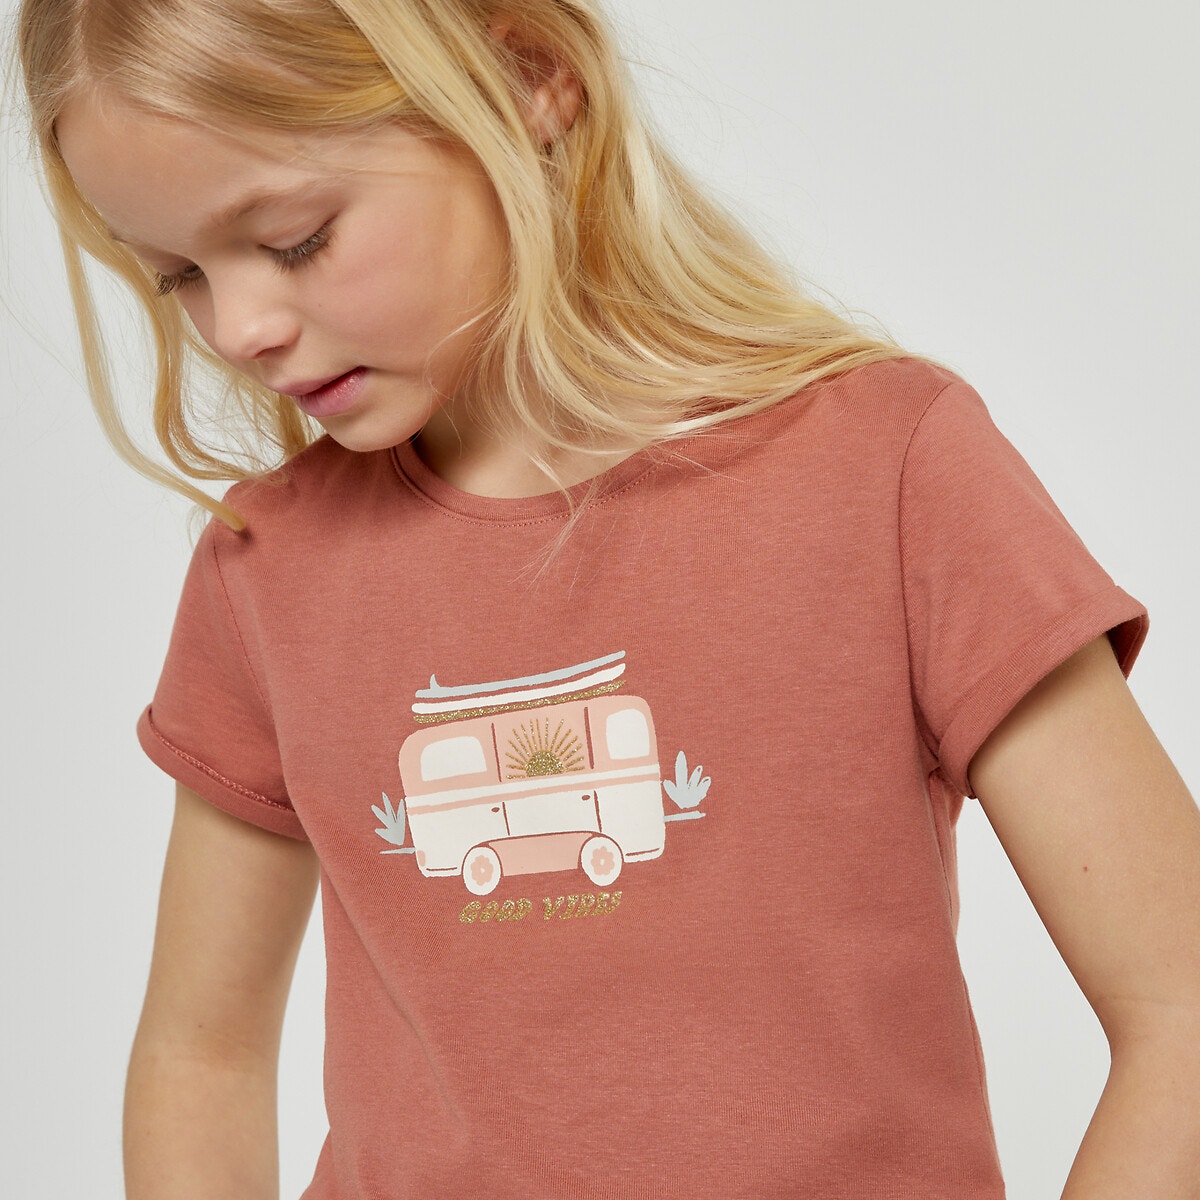 Μόδα > Παιδικά > Κορίτσι > T-shirt, αμάνικες μπλούζες > Κοντομάνικες μπλούζες Κοντομάνικο T-shirt με στάμπα μπροστά